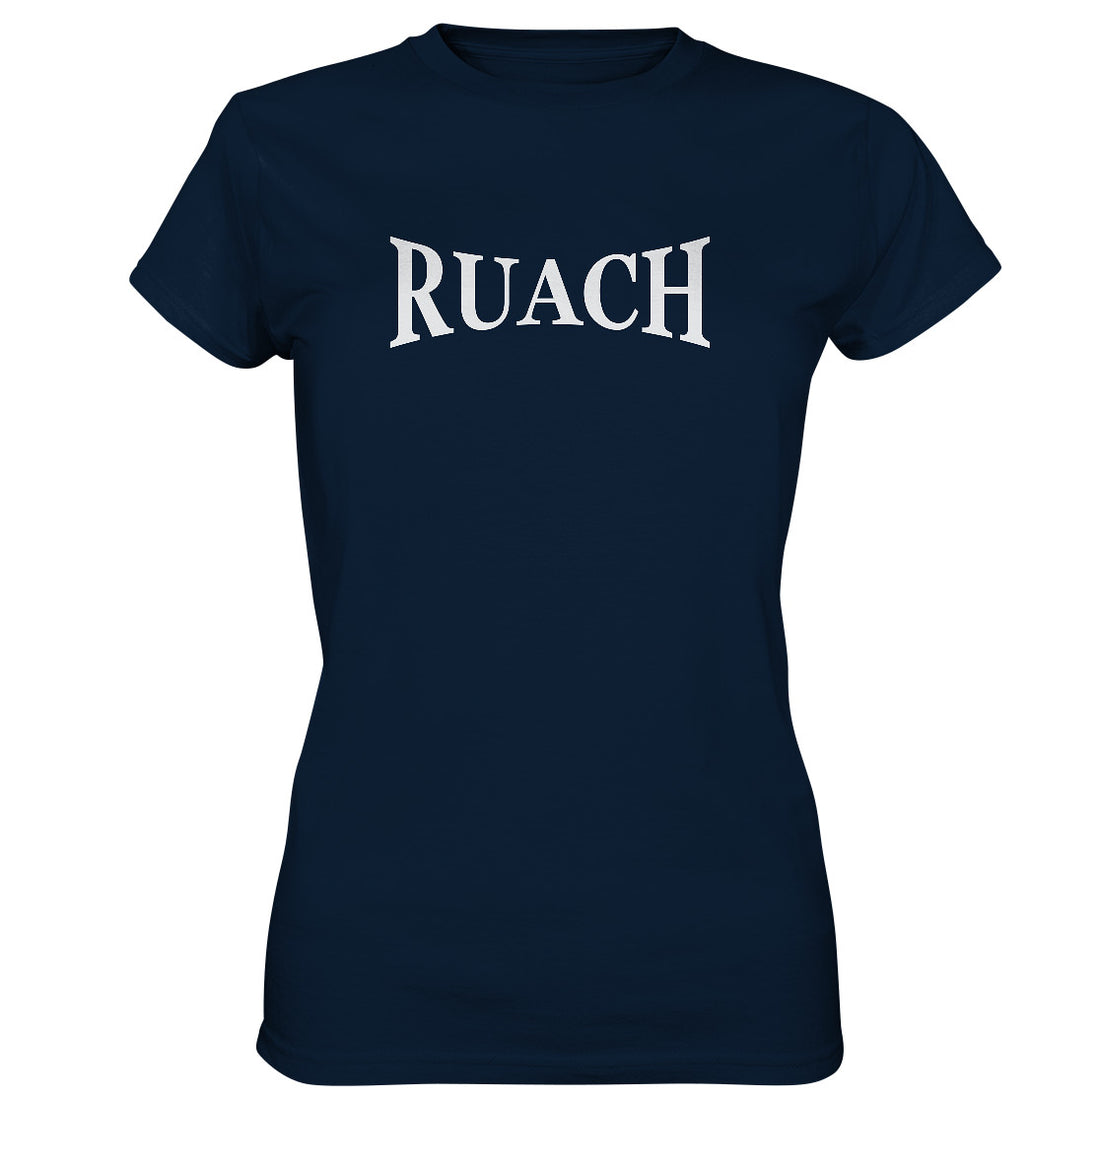 Ruach - Ladies Premium Shirt